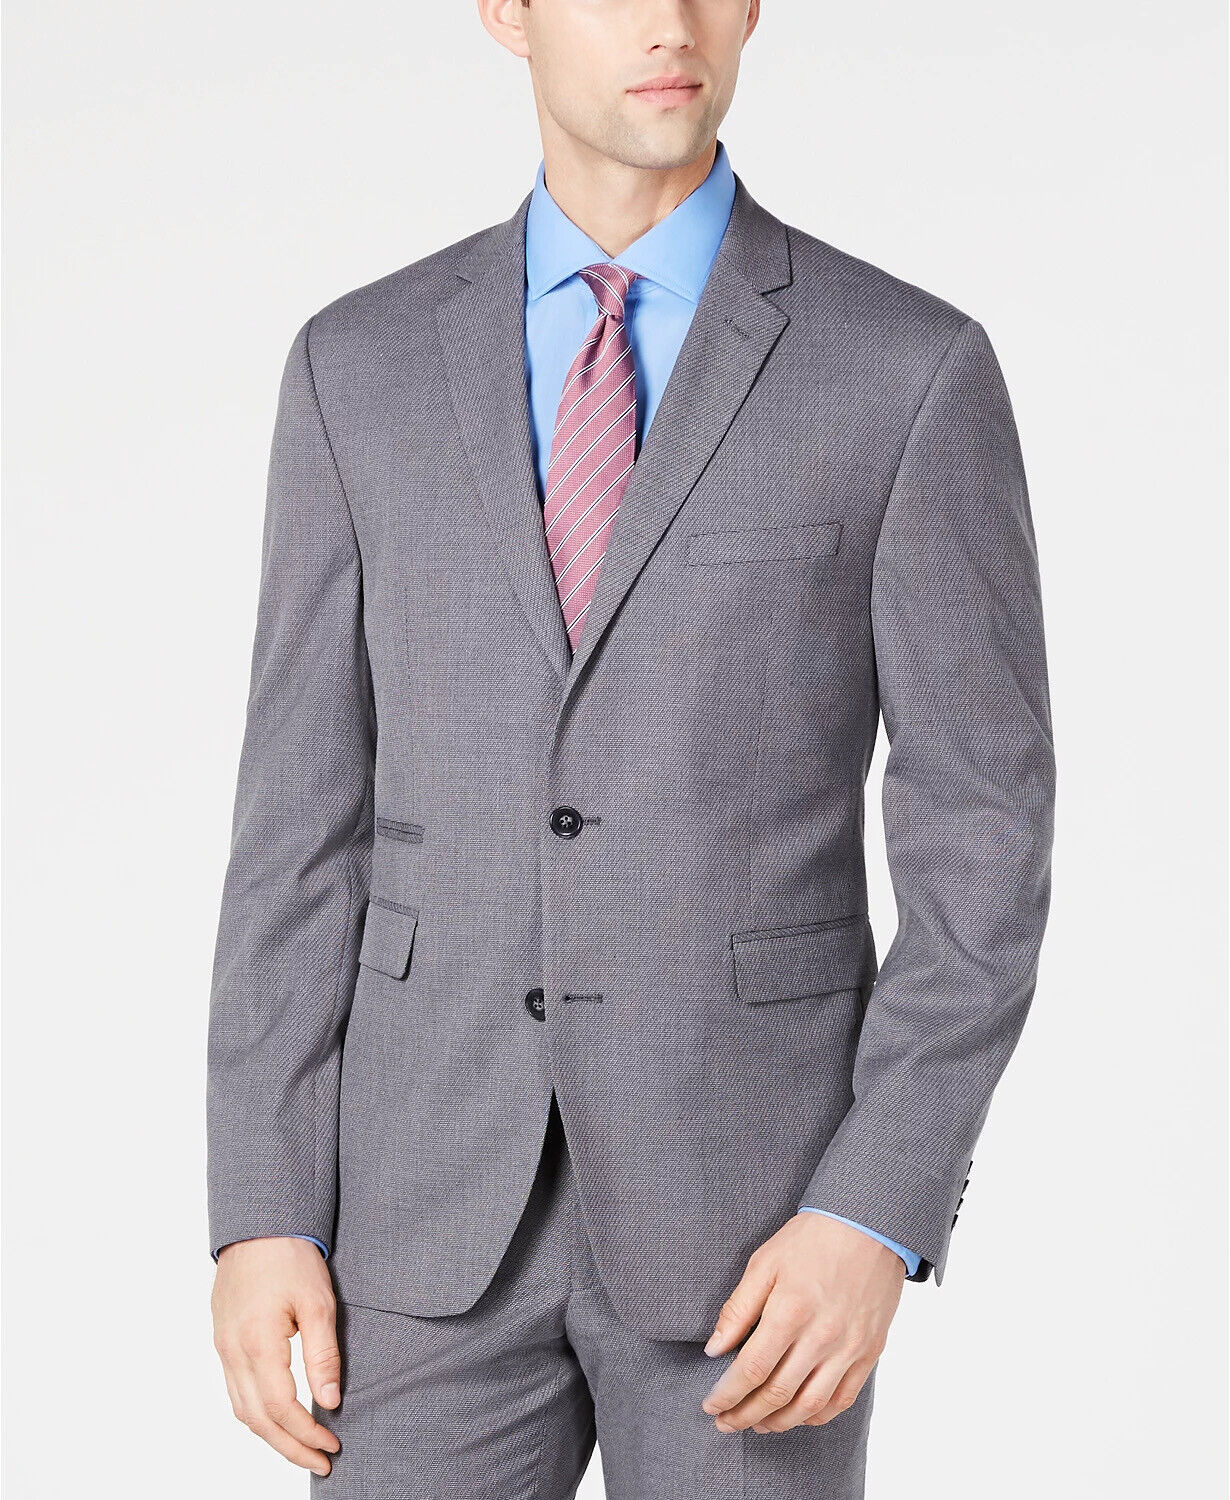 Vince Camuto Men's Grey Slim Fit Stretch Suit jacket 36R Sport Coat